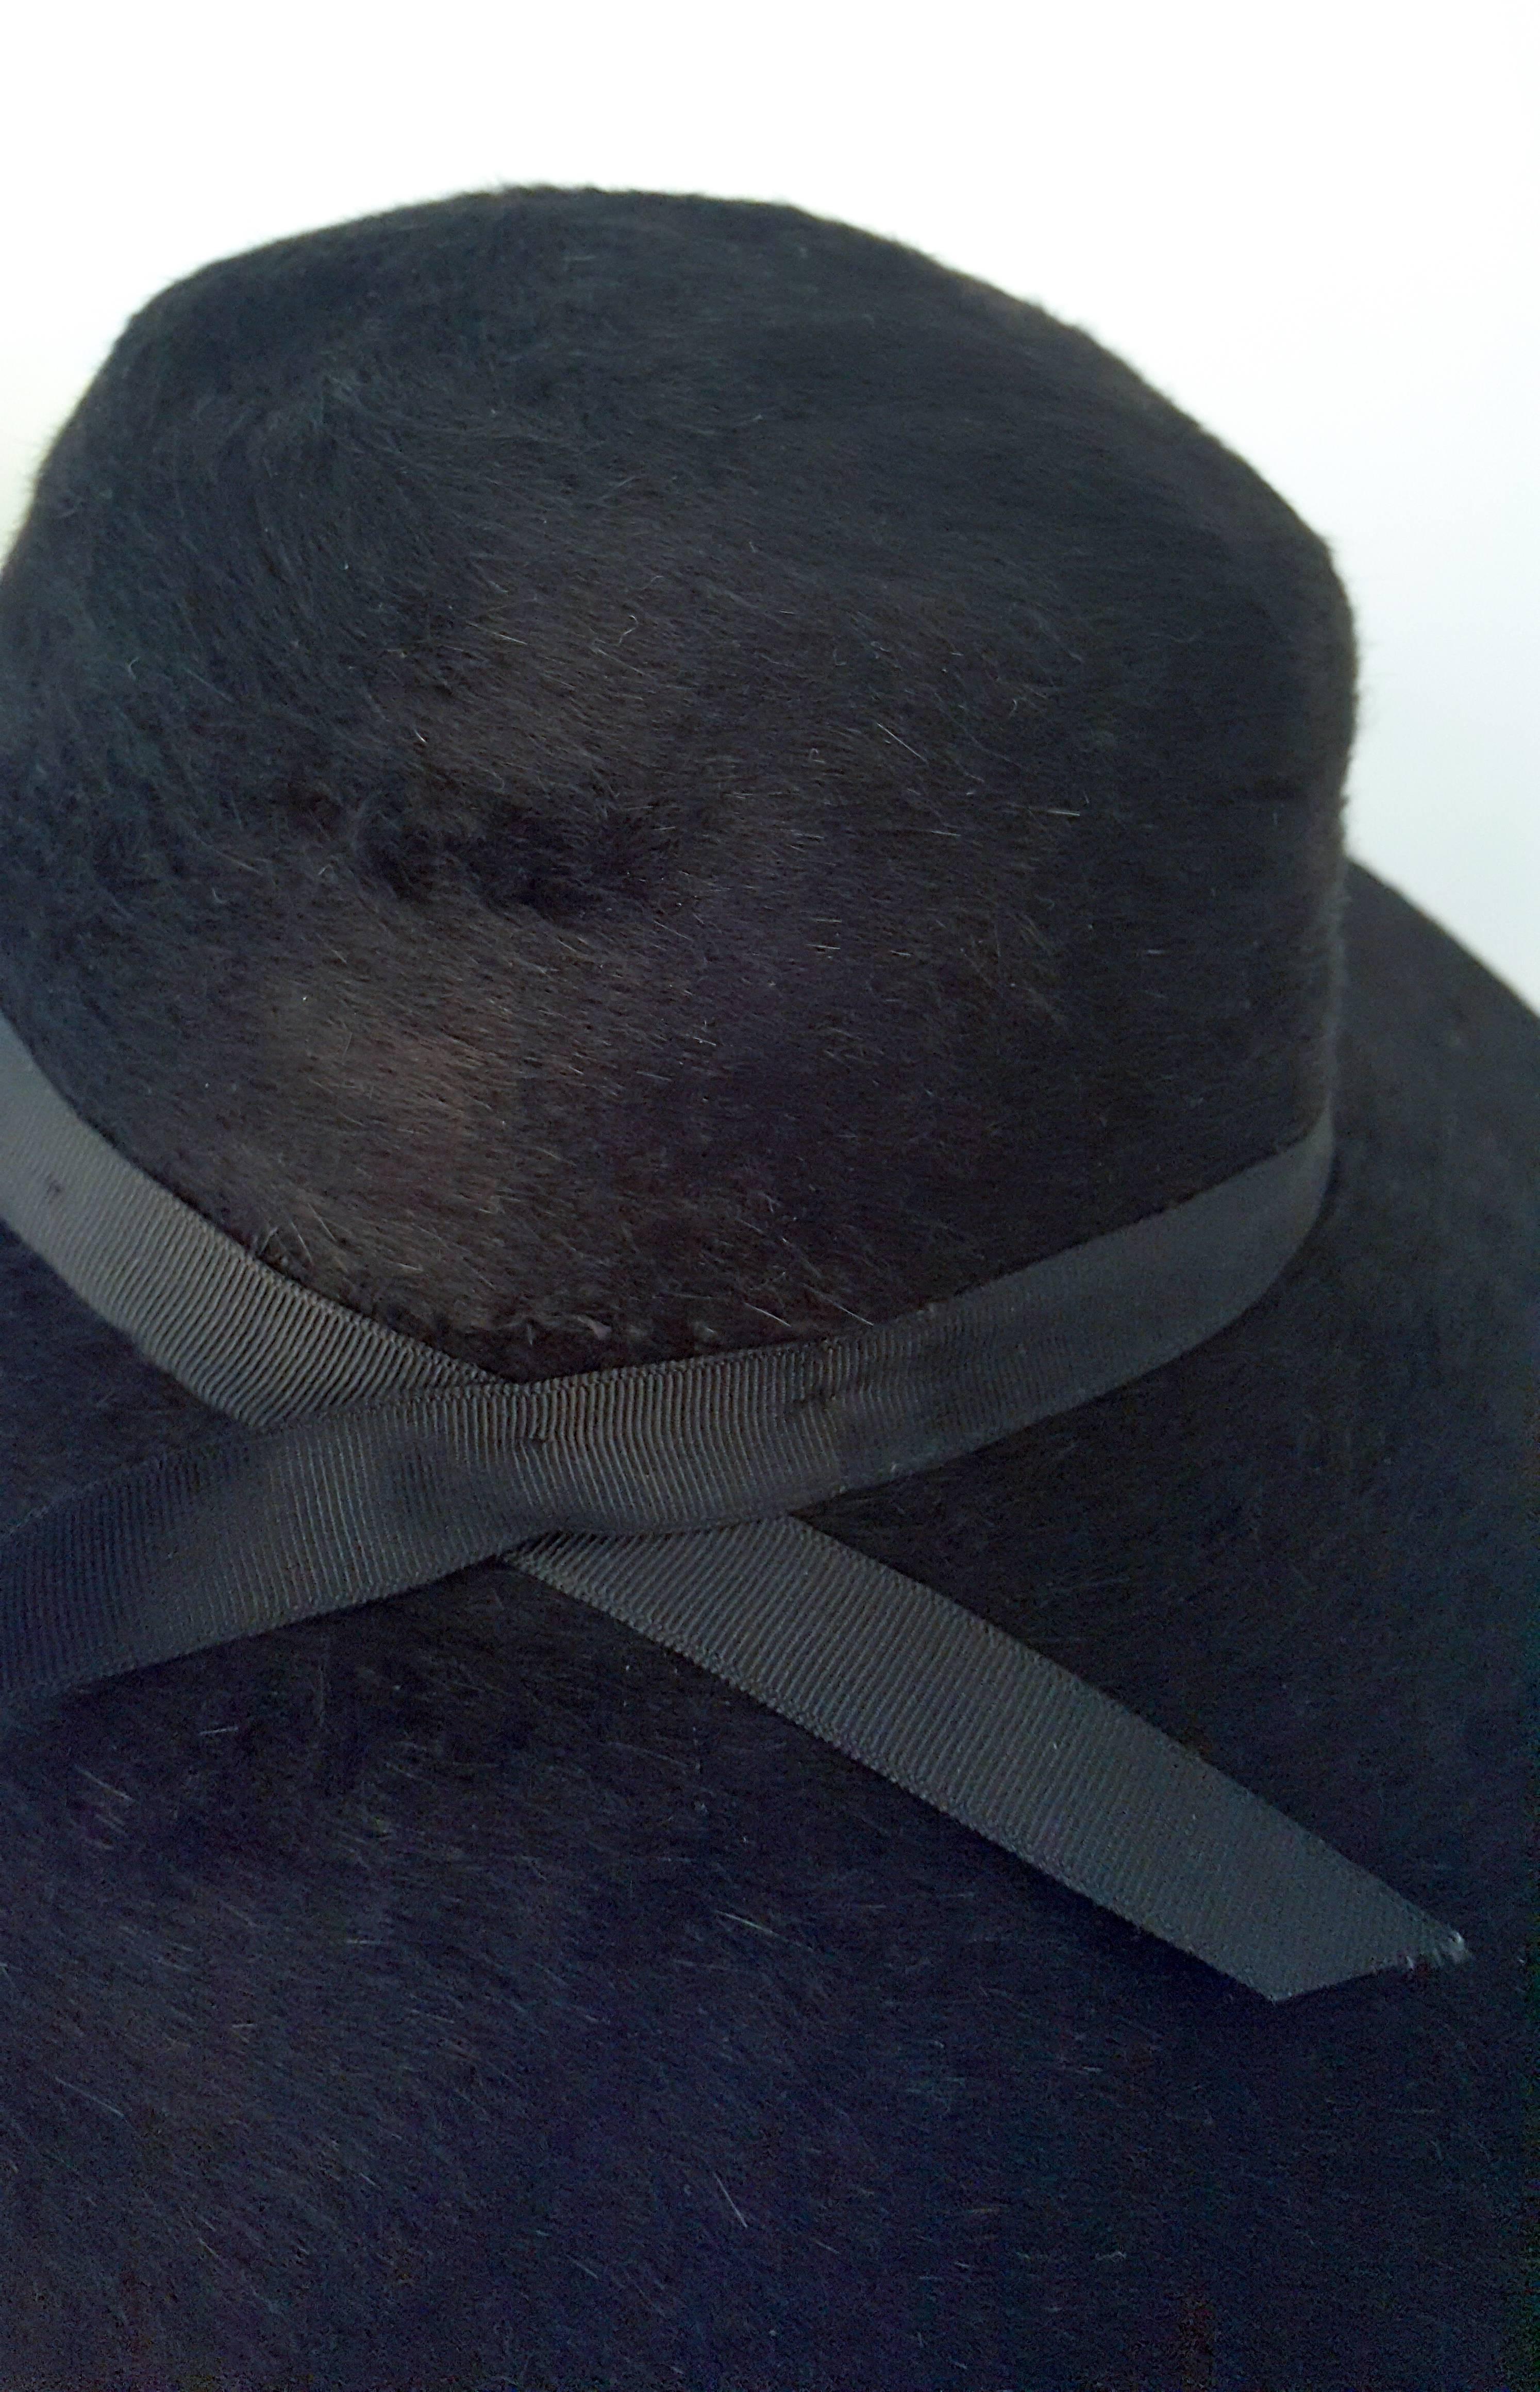 1960s Black Fur Felt Wide Brimmed Hat 1